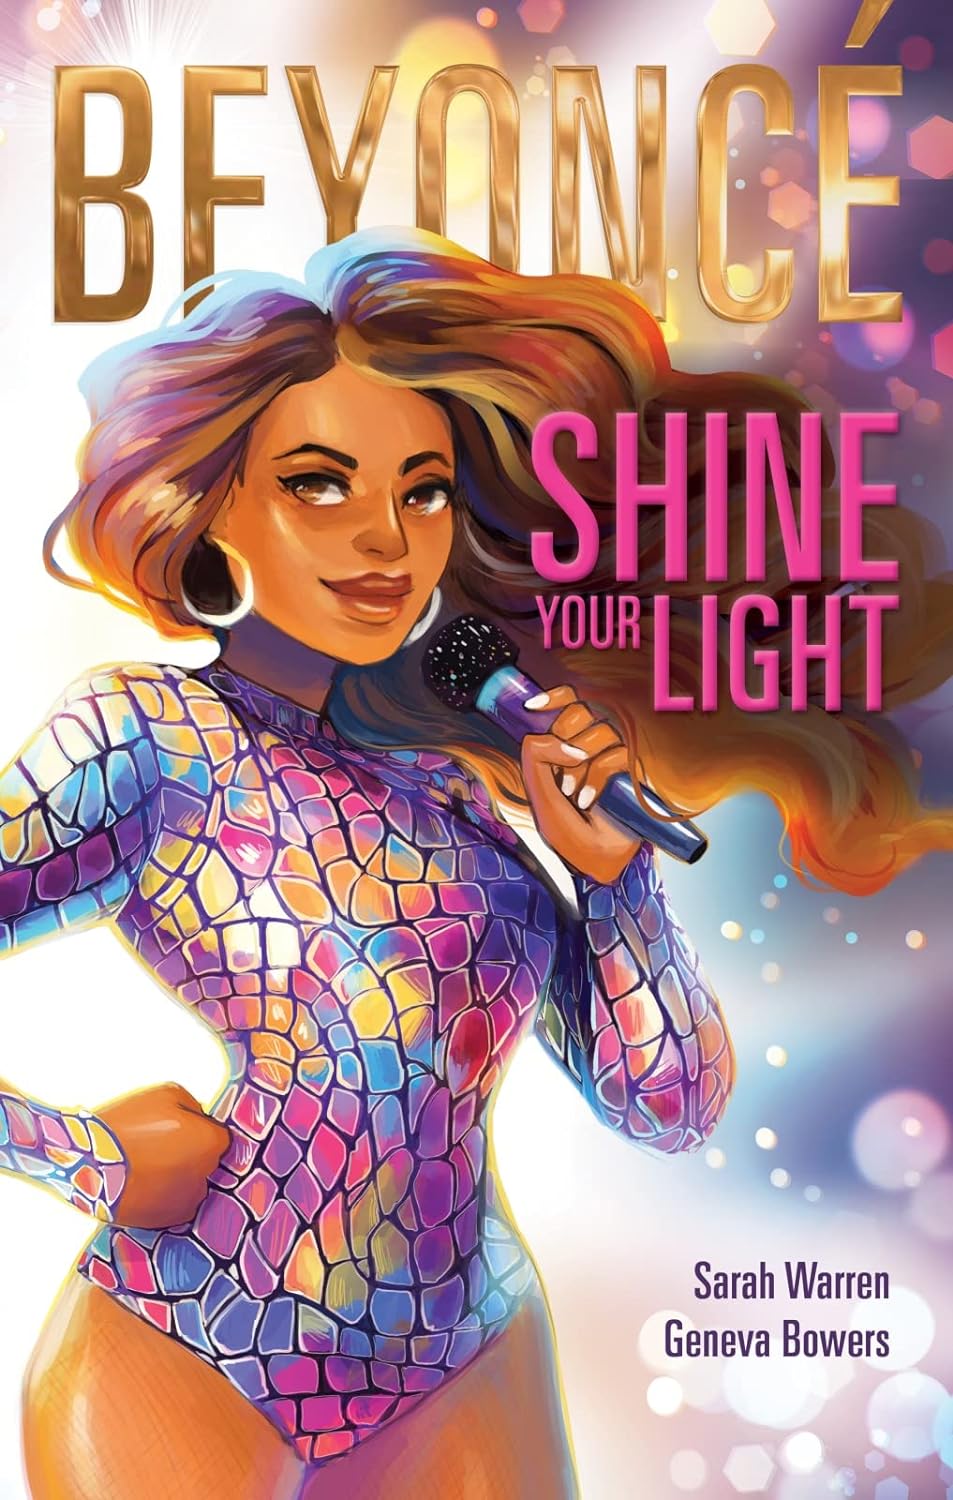 Book - Beyoncé: Shine Your Light-hotRAGS.com